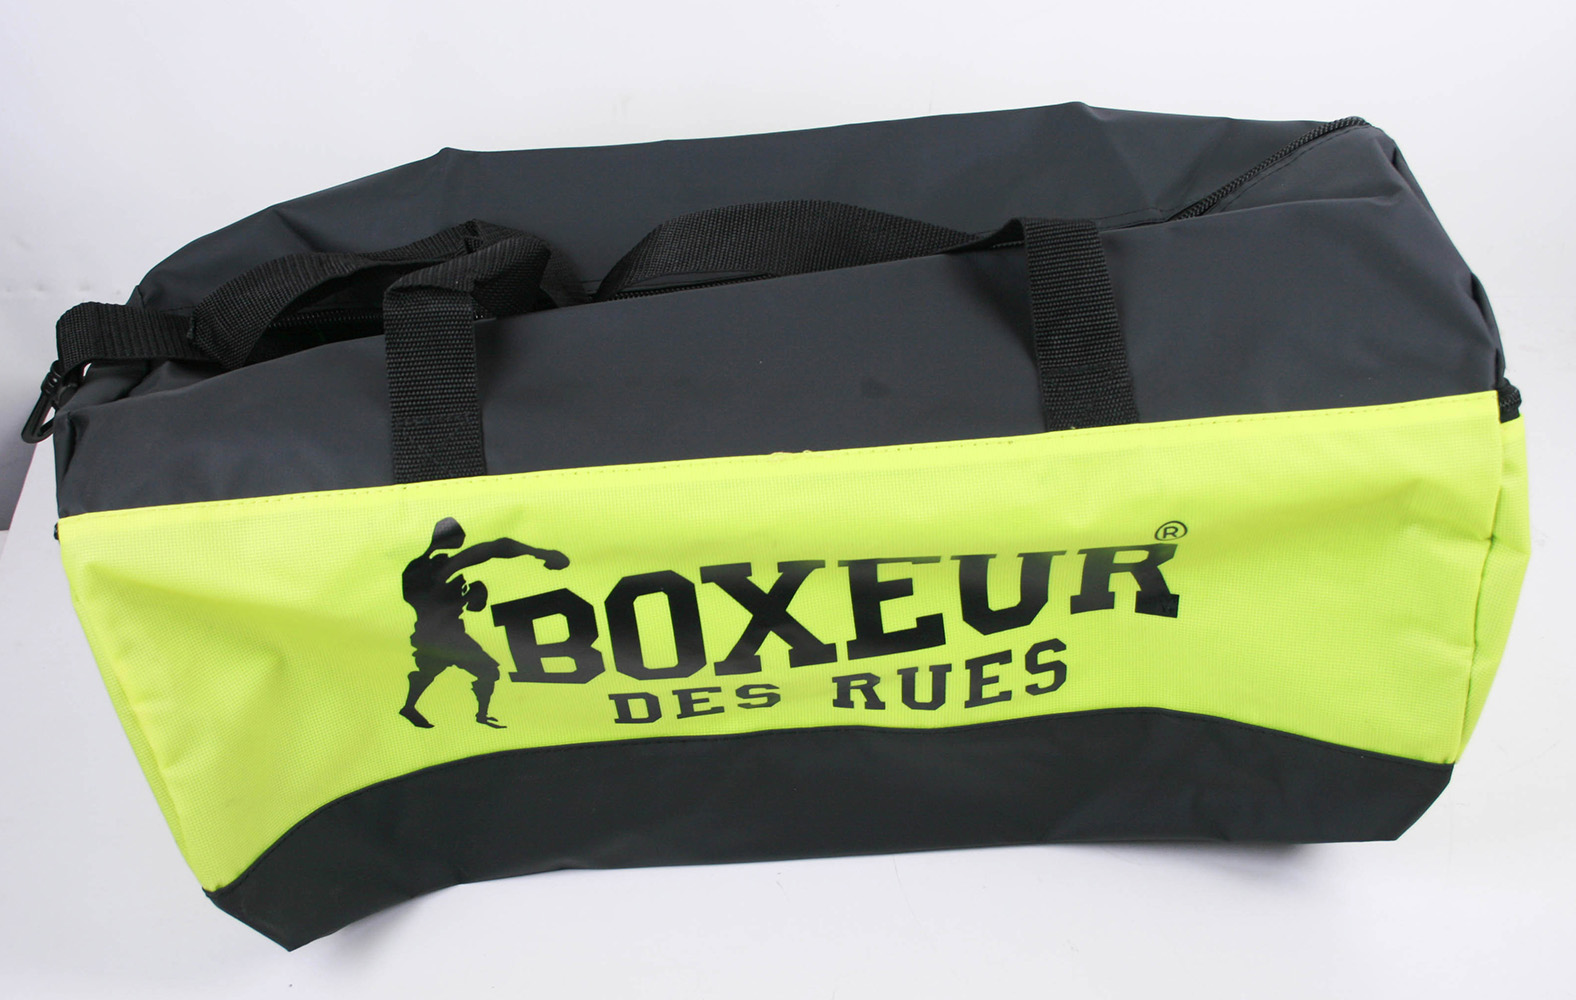 BOXEUR DES RUES Schultergurt Sporttasche Schwarz/Gelb 30 x 58 x 8 cm